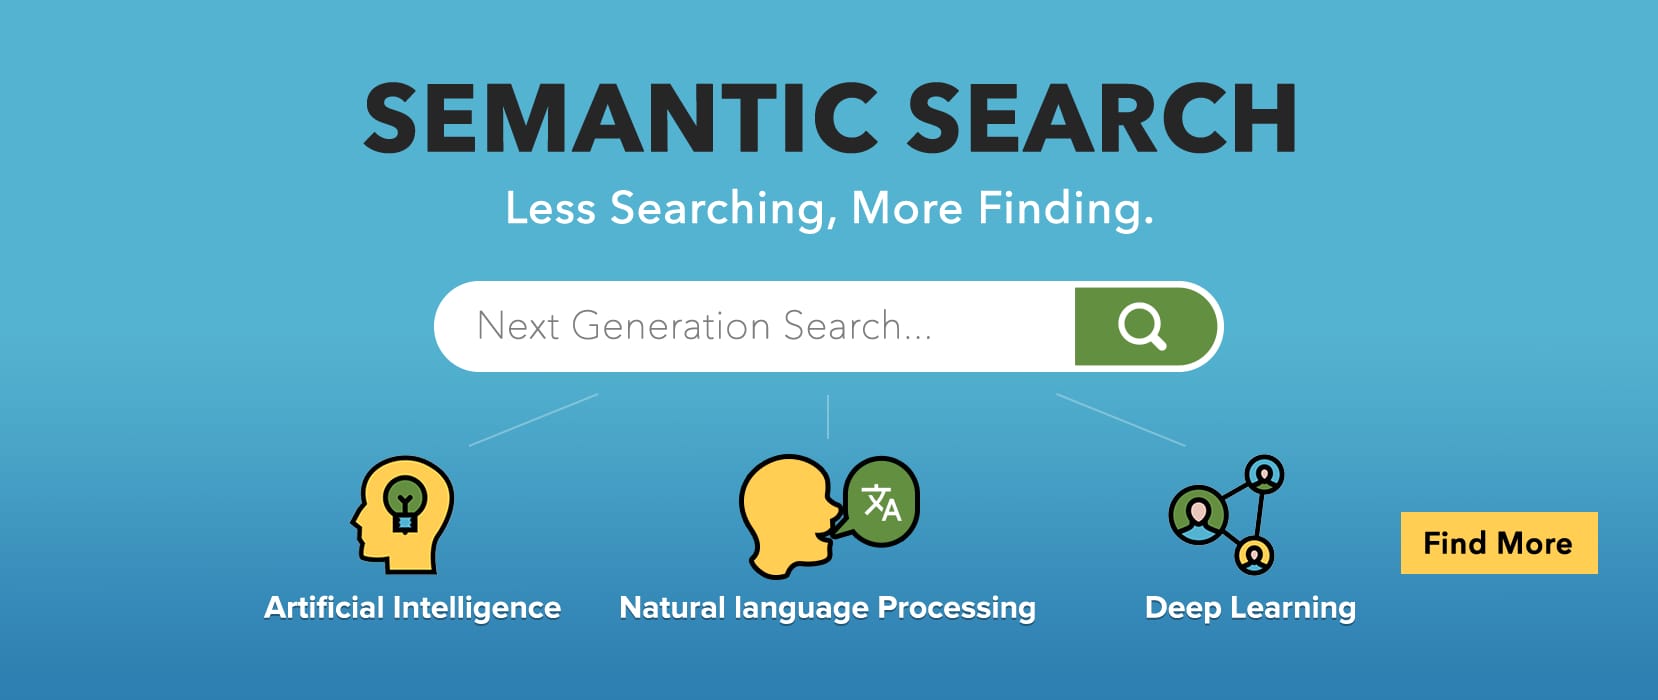 Semantic Search giúp hiển thị nhiều kết quả có liên quan đến từ khóa chính, từ đó hạn chế tình trạng tìm kiếm nhiều lần của người dùng